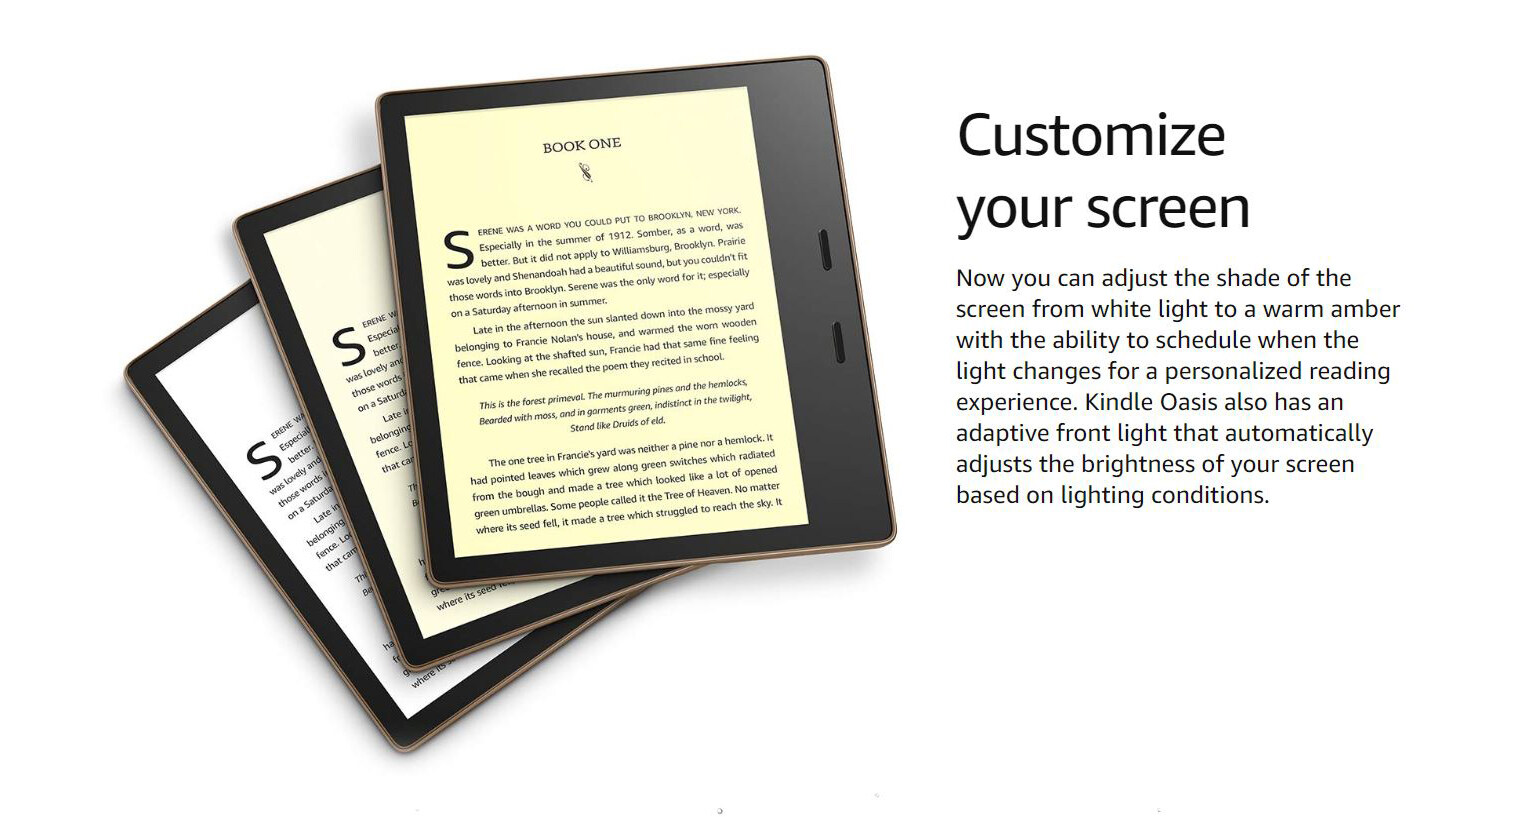 ภาพที่ให้รายละเอียดเกี่ยวกับ Amazon Kindle Oasis E-reader 2019 , 7 High-Resol Display (300 ppi), Waterproof, Built-In Ae, Wi-Fi or Cellular (Without Ads) - Ready to Ship , 1 Year Warranty